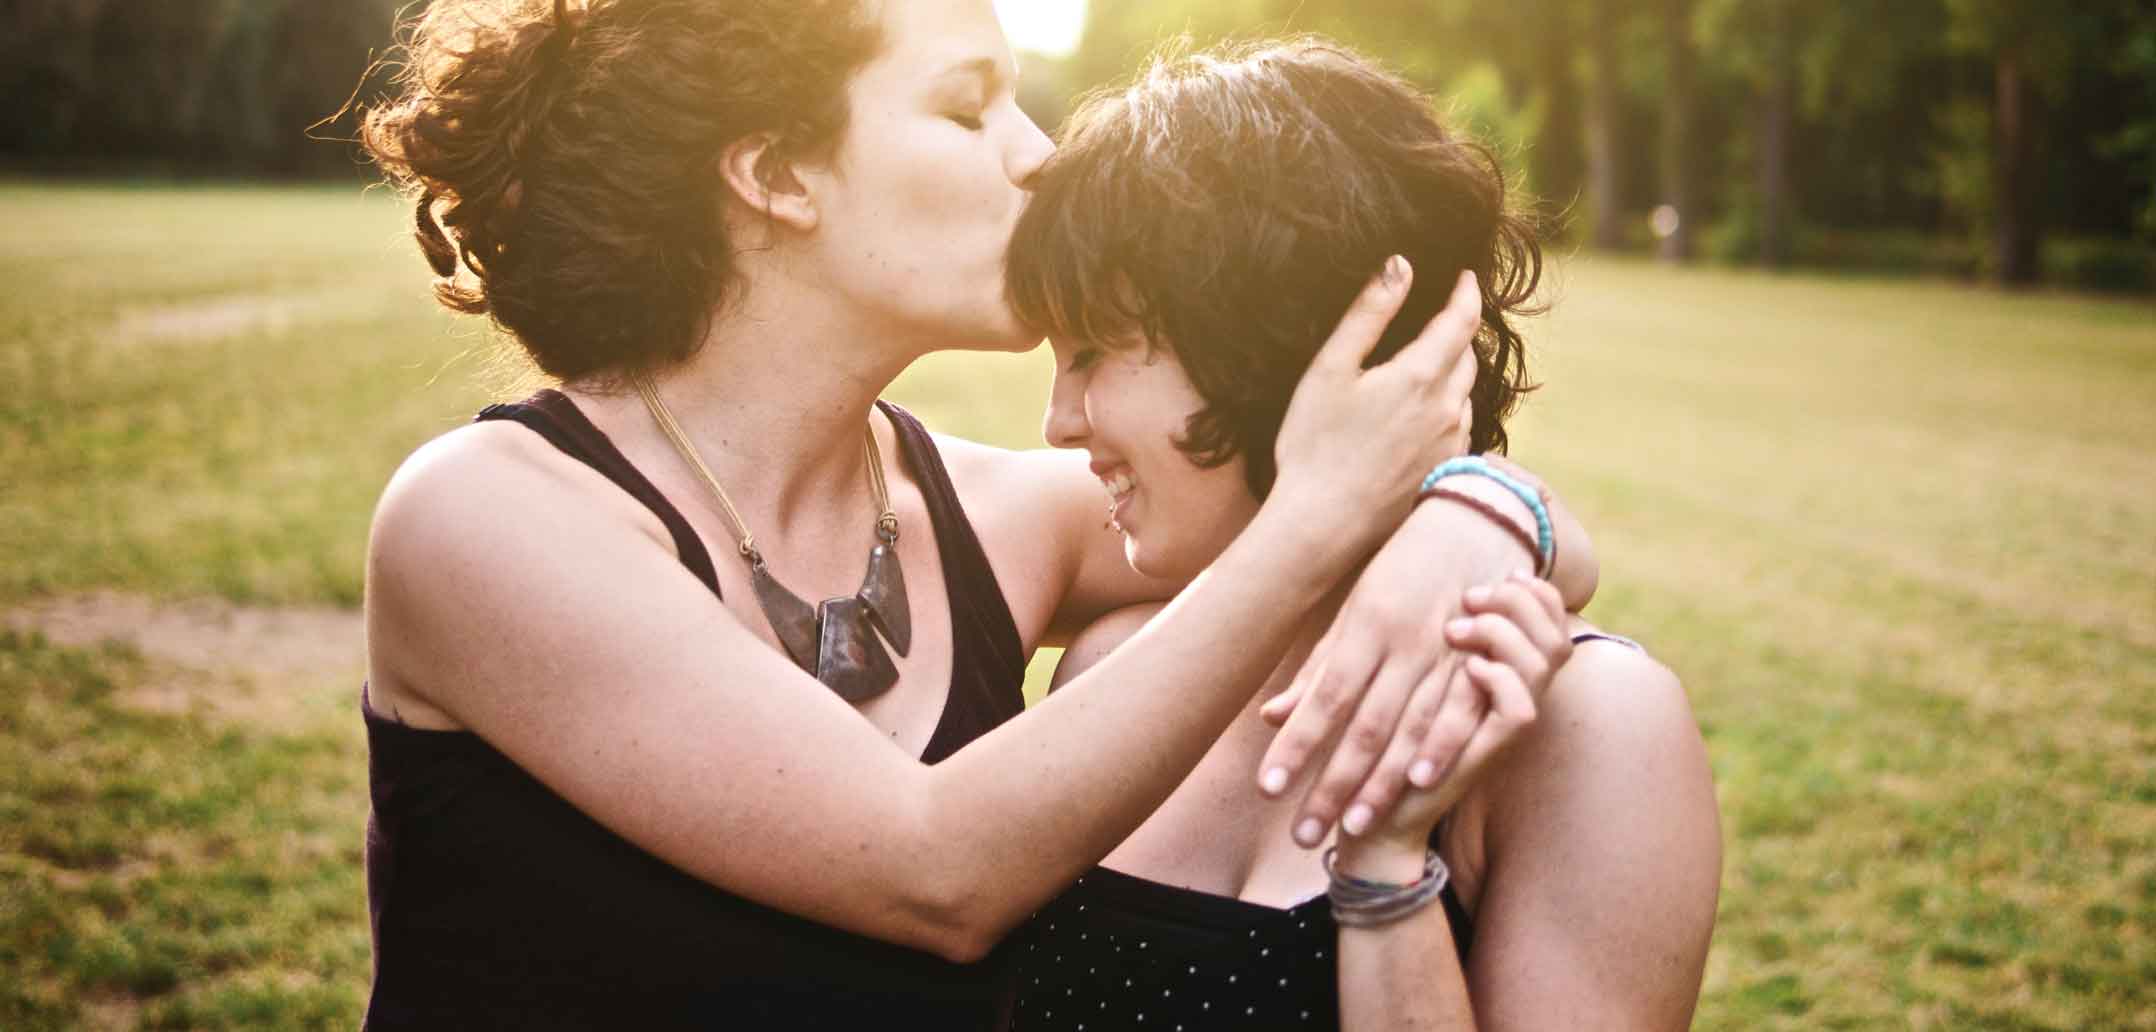 Von schwulen und lesbischen Paaren lernen